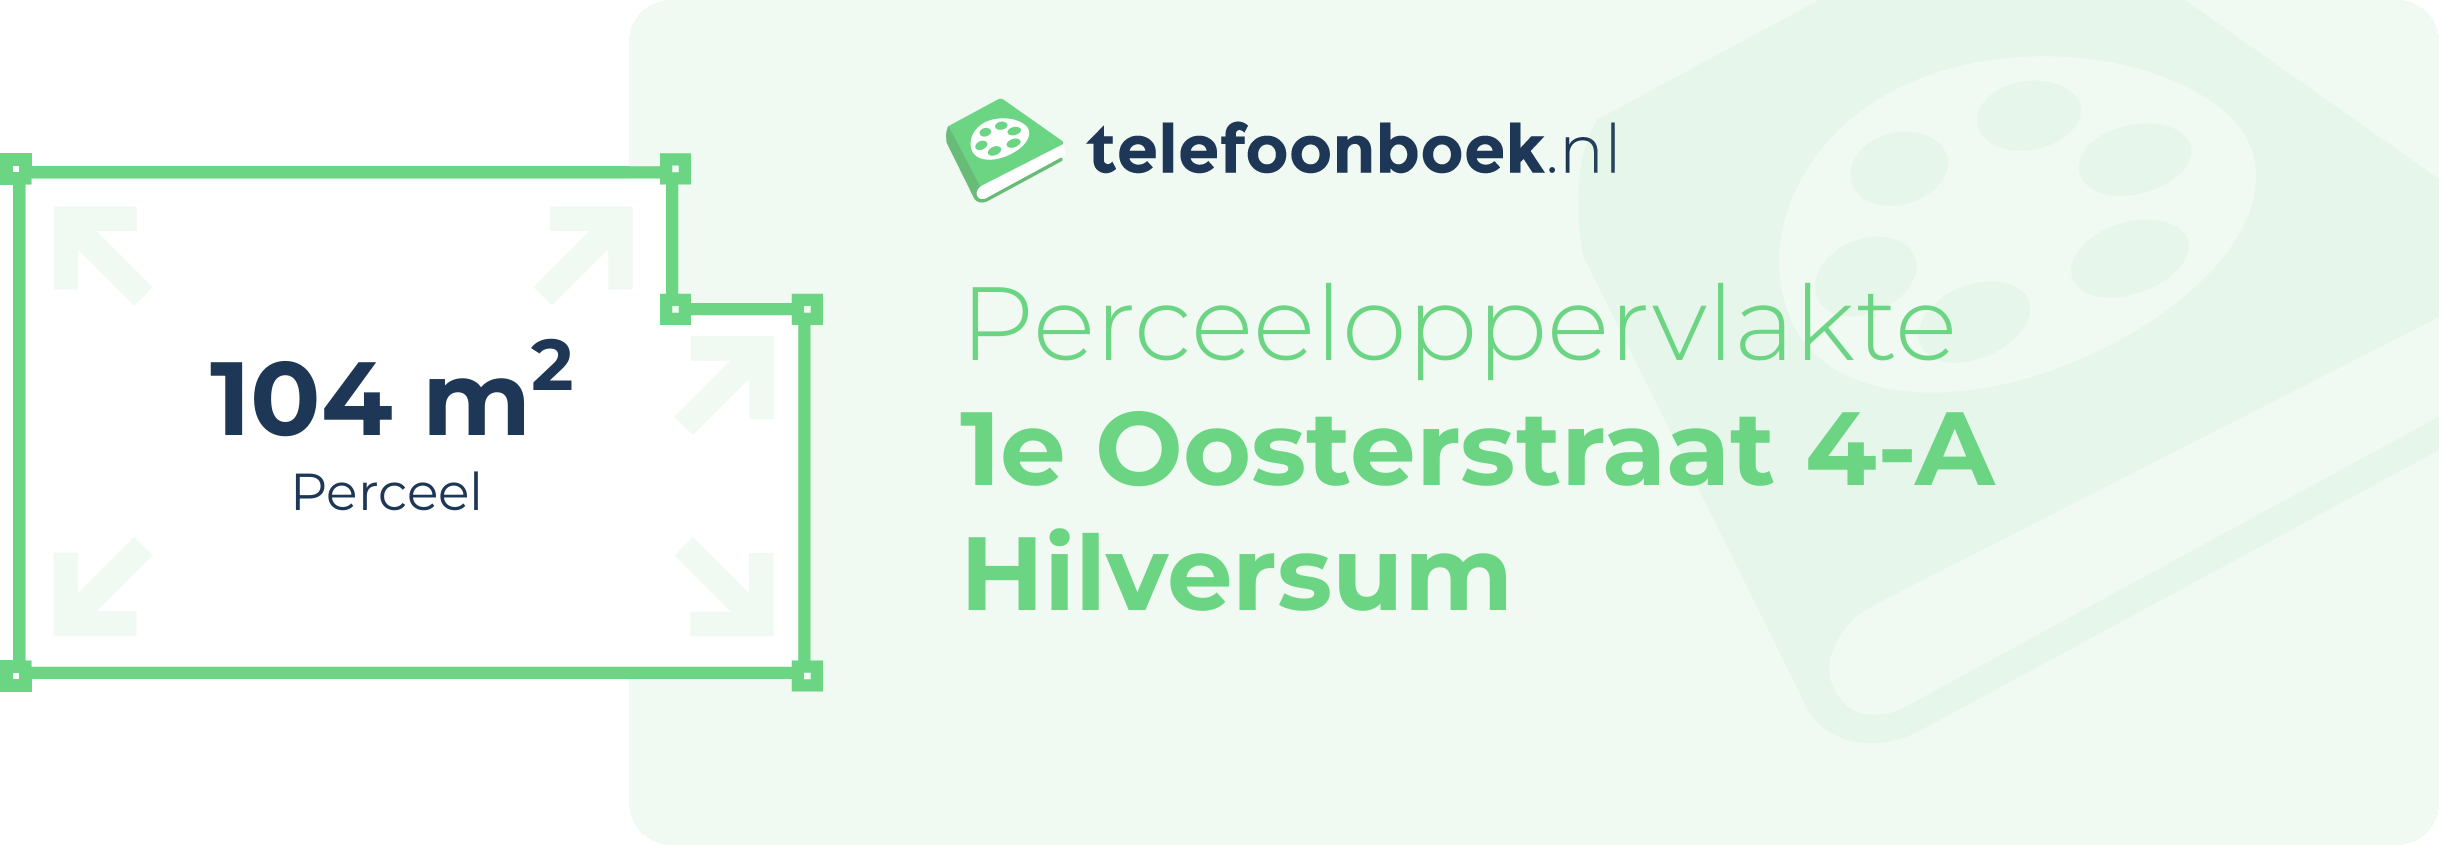 Perceeloppervlakte 1e Oosterstraat 4-A Hilversum